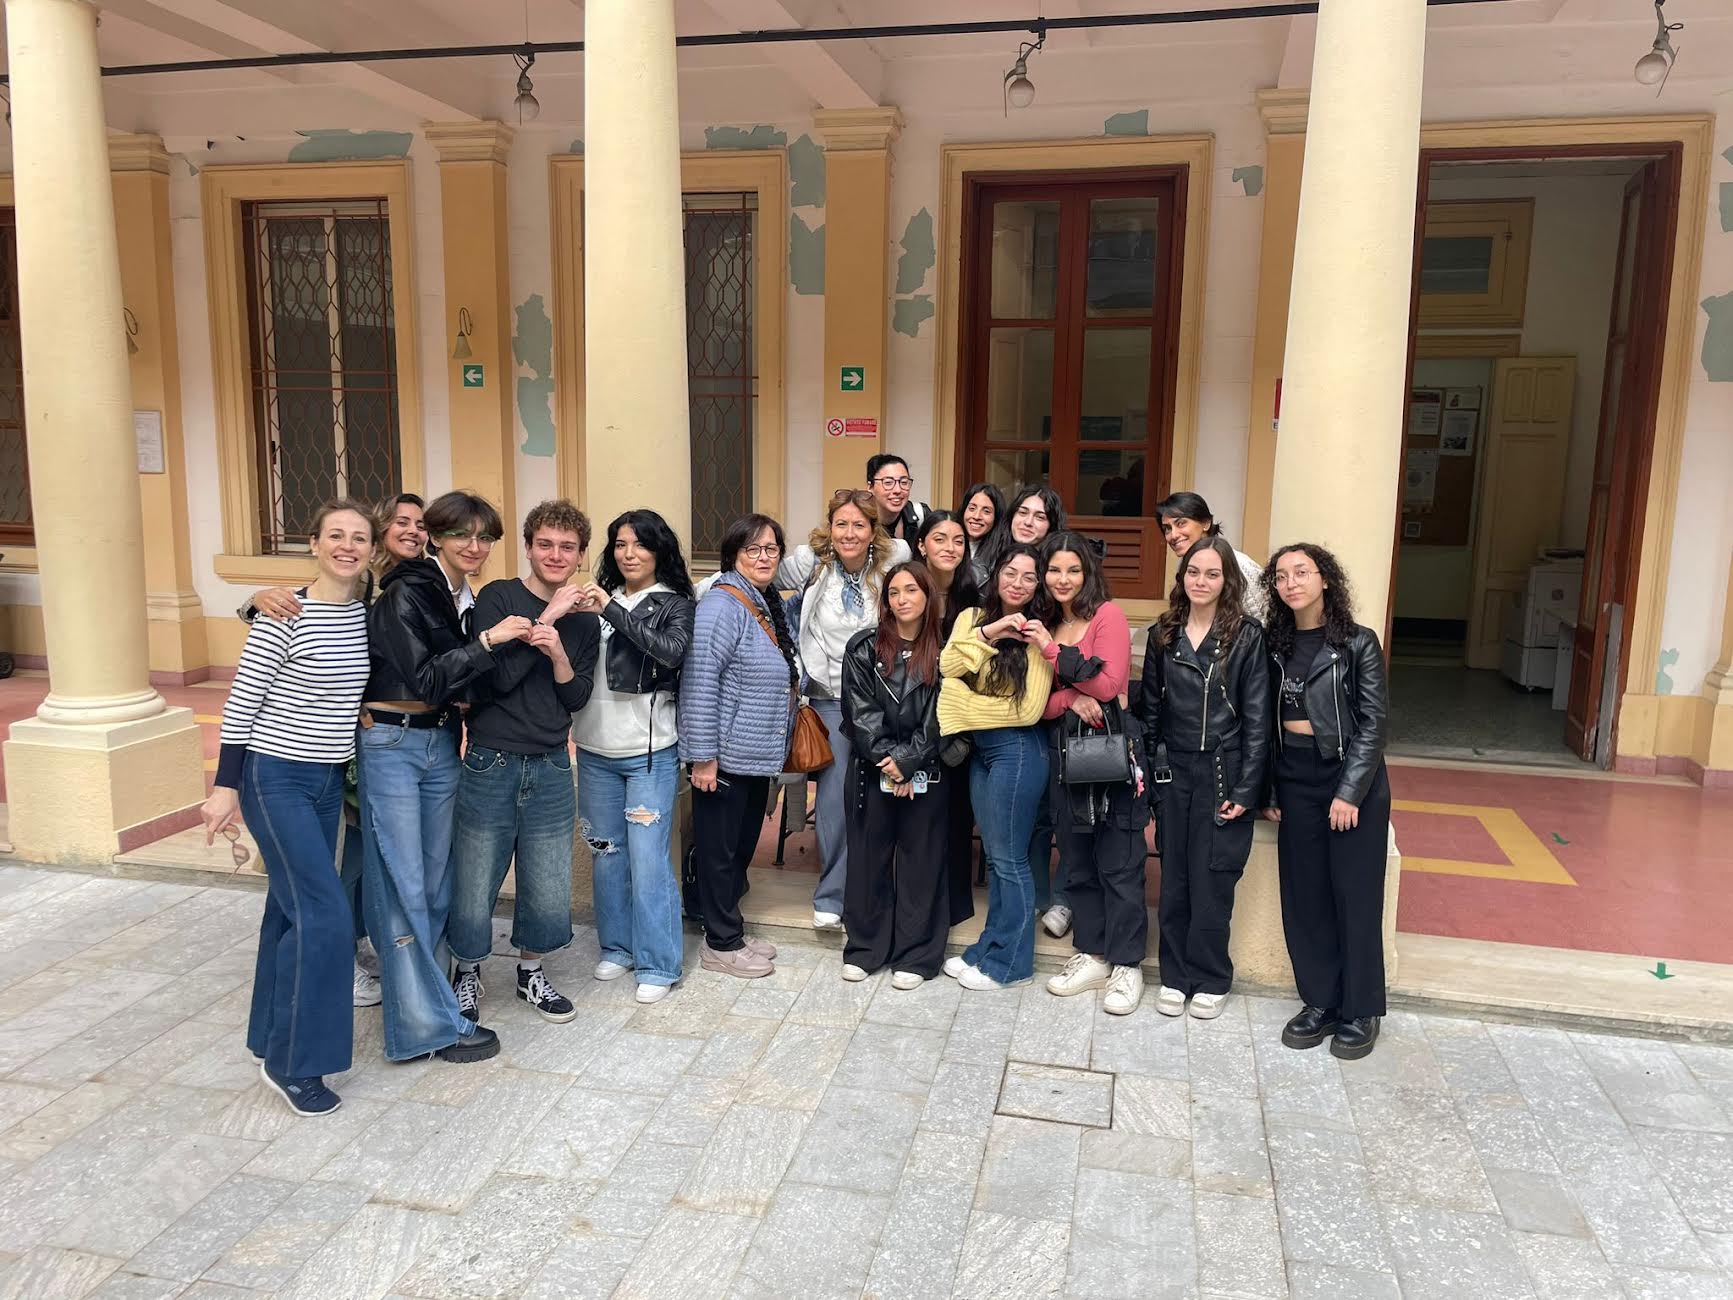 Reggio, la “Dante Alighieri” impegnata nelle attività di orientamento degli studenti dell’Alvaro di Palmi